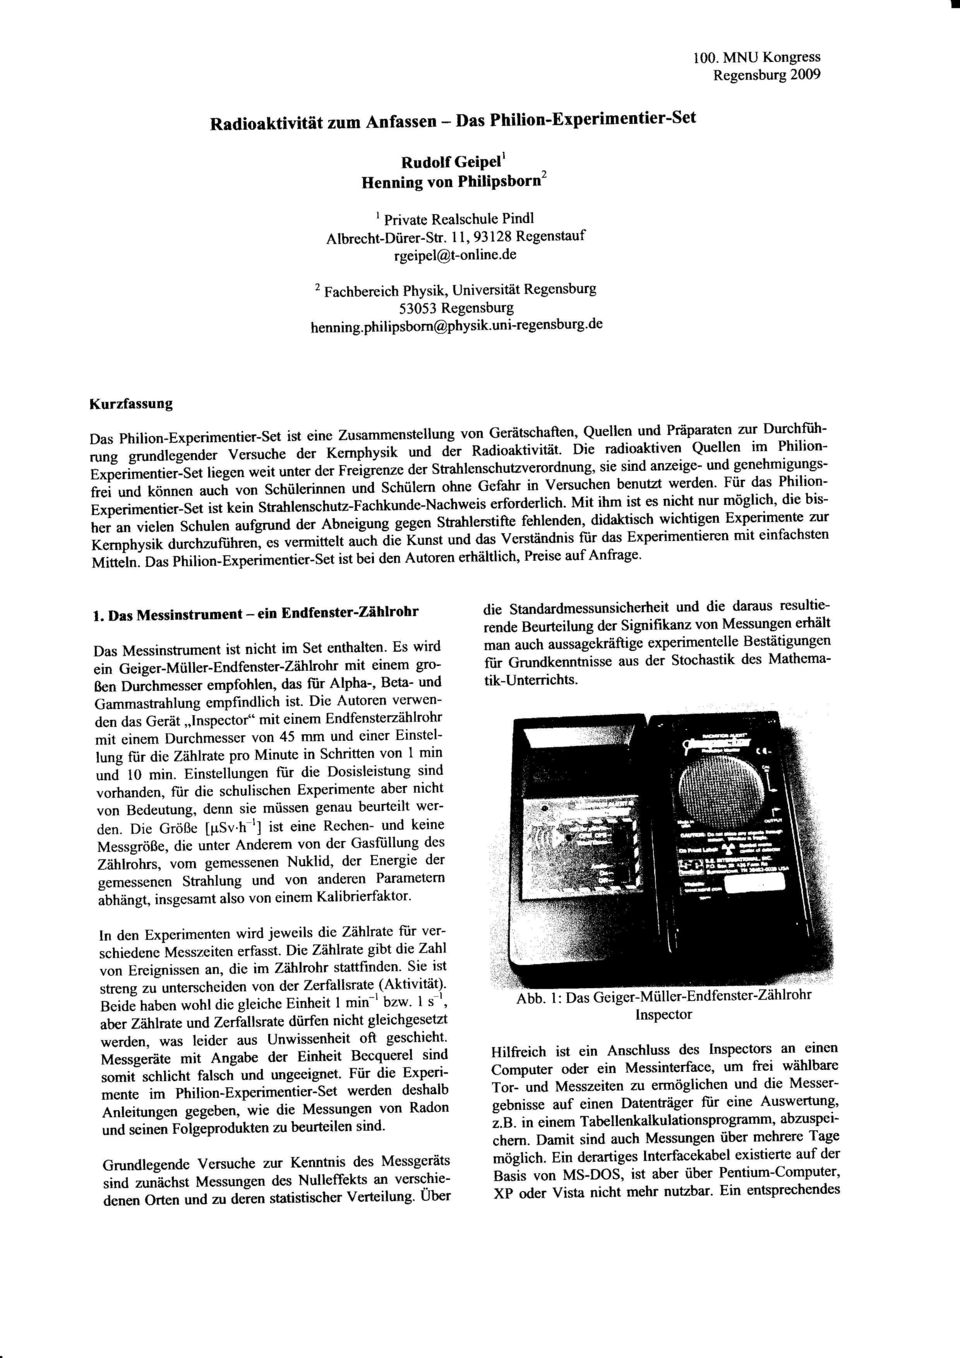 uni-egensbug'de Kuzfassung Das philion-expeimentie-set ist eine Zusammenstellung von Geätschaften, Quellen und Päpaaten zu Duchfühung gundlegende vesuche de Kenphysik und di Radioaktivität.